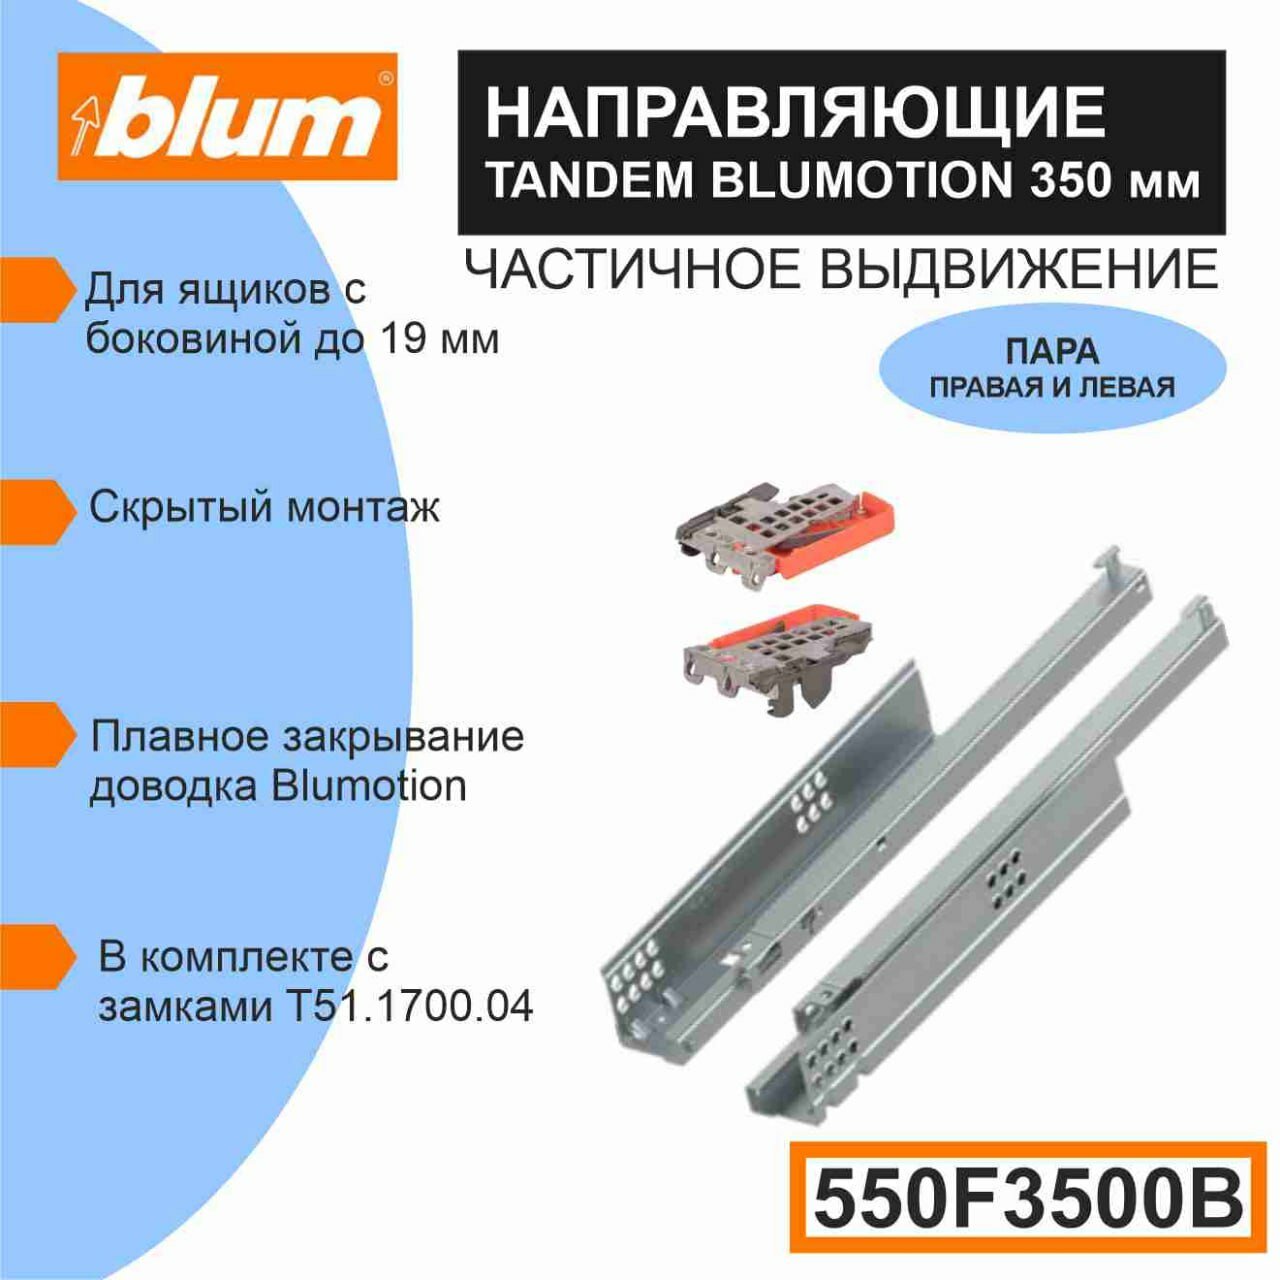 Направляющие скрытого монтажа BLUM TANDEM 550F5500B c системой плавного закрывания Blumotion для ящиков с боковиной до 19 мм 30кг 1 комплект